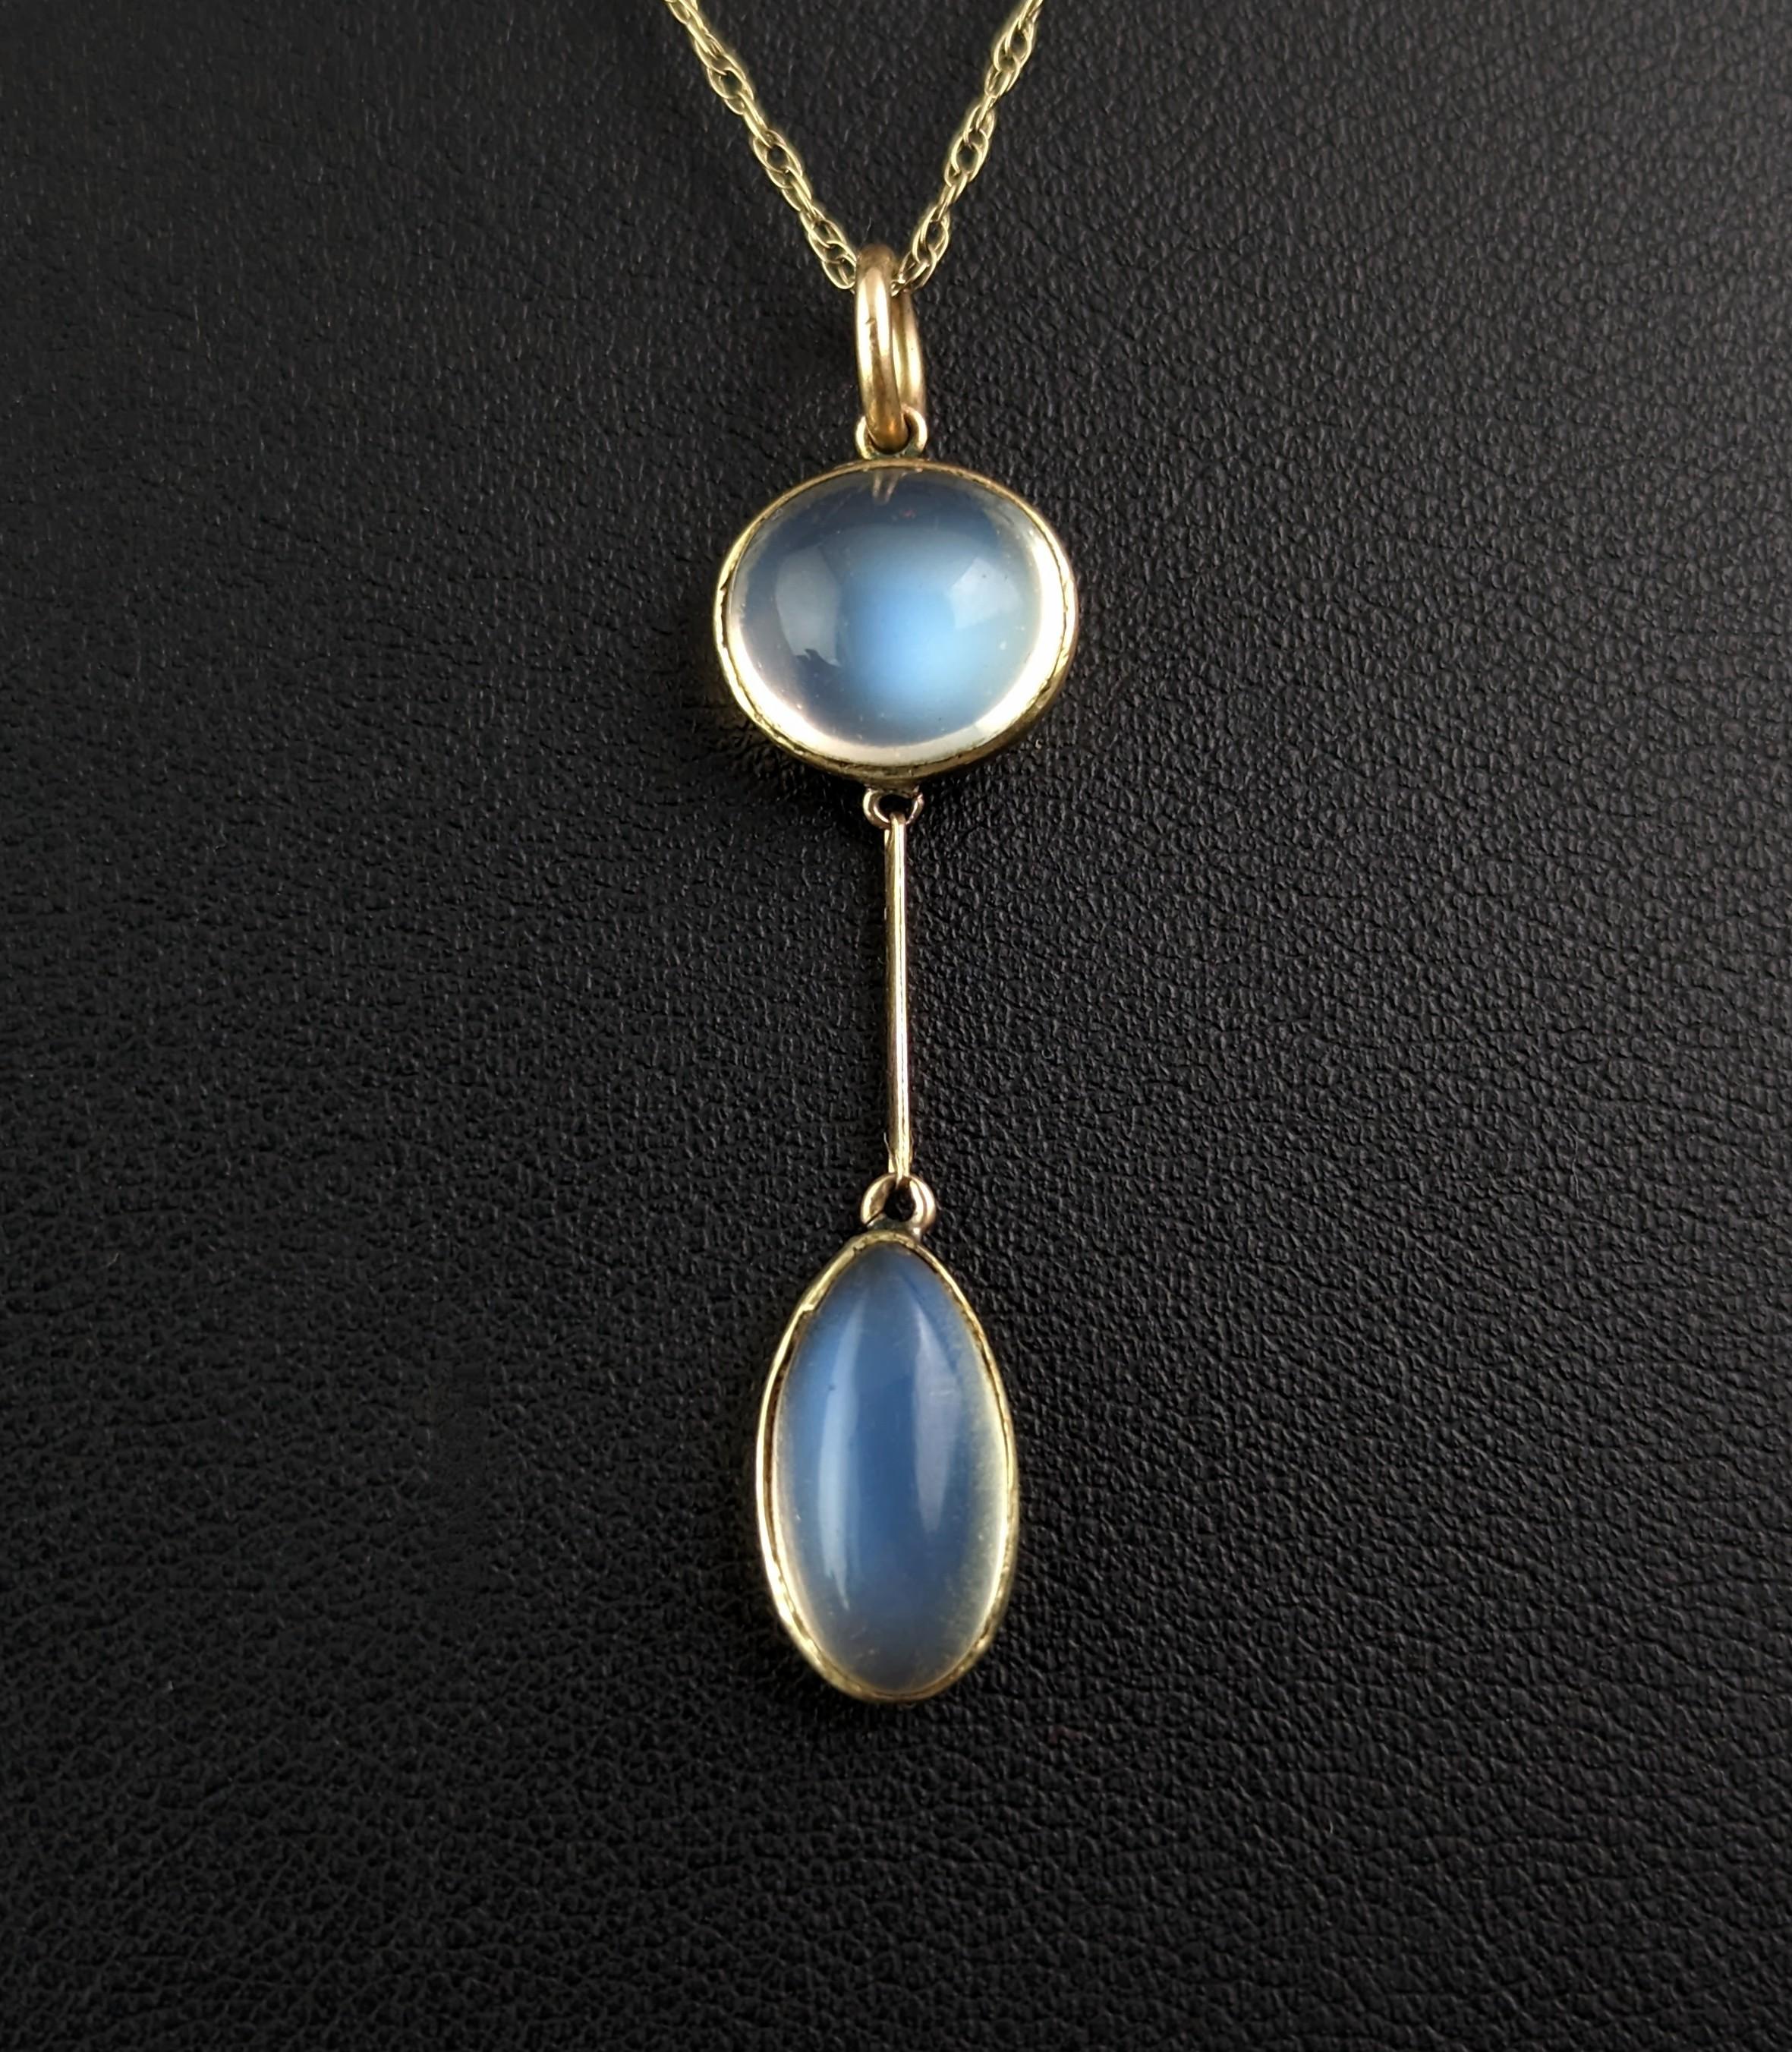 Women's Antique Art Deco Moonstone pendant necklace, 9k gold 